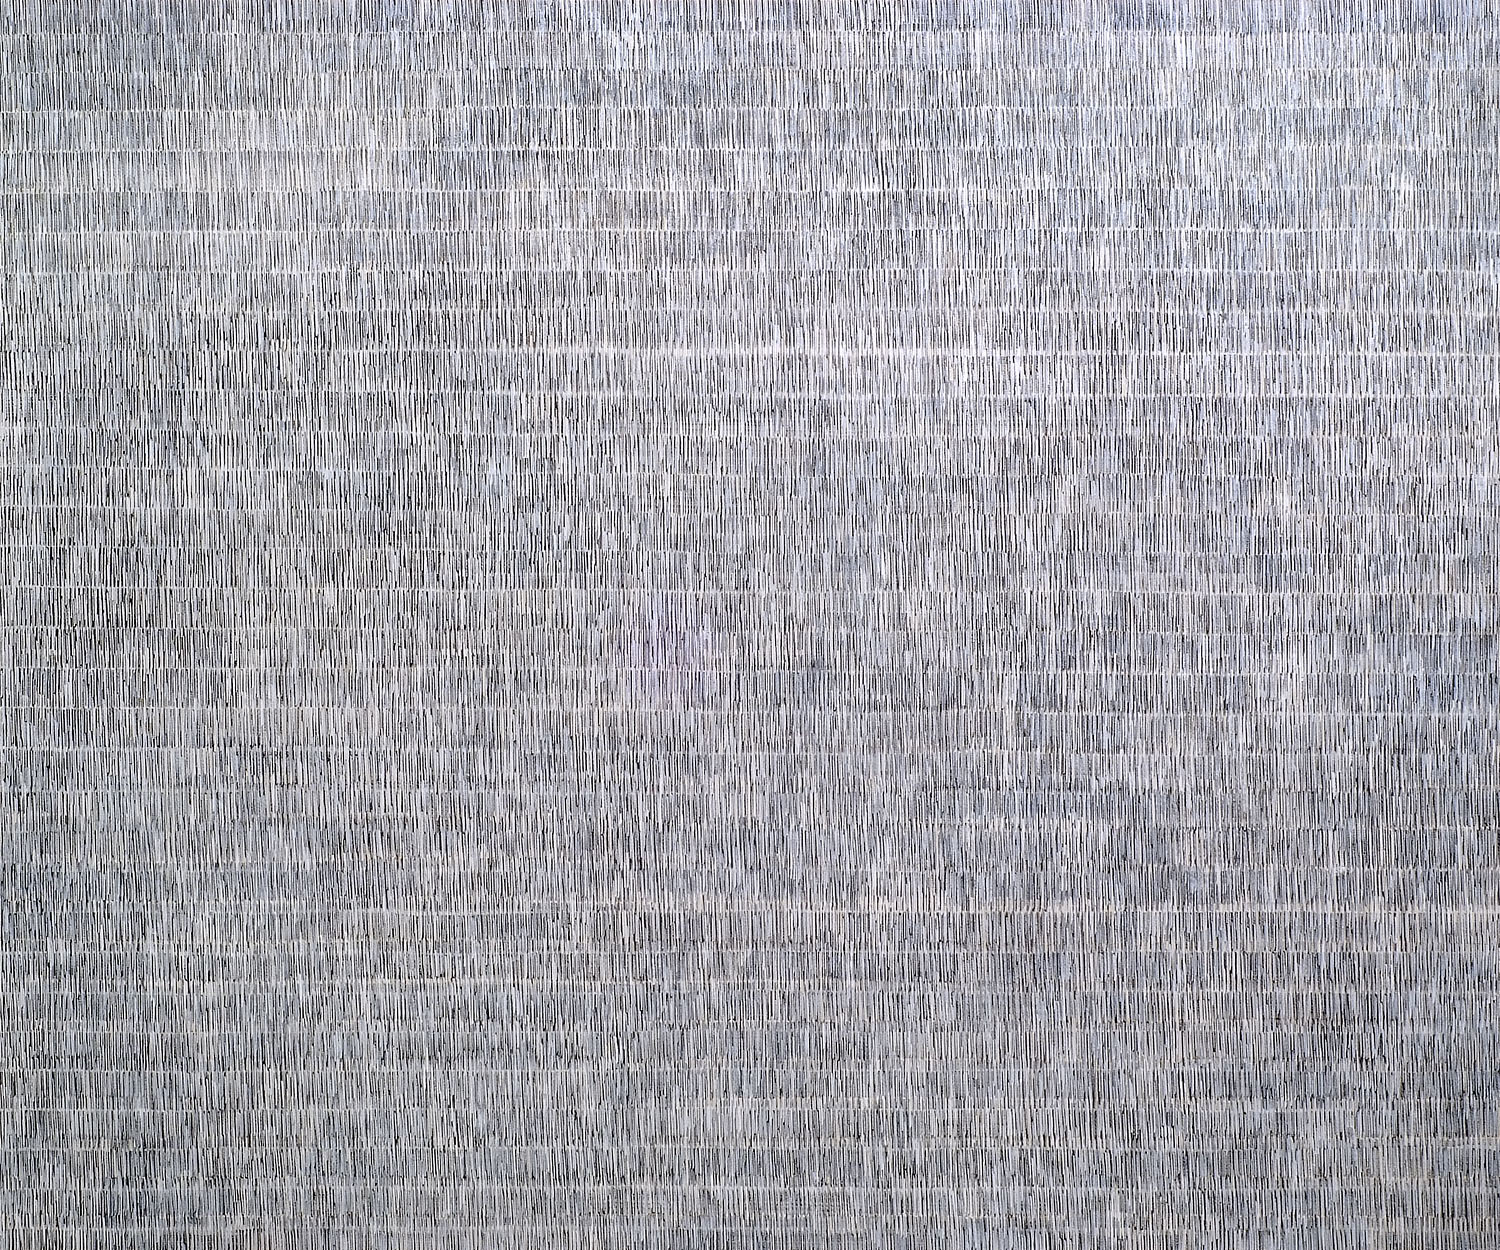 Nikola Dimitrov, Große Komposition I, 2010 250 x 300 cm, Pigmente, Bindemittel, Lösungsmittel auf Leinwand